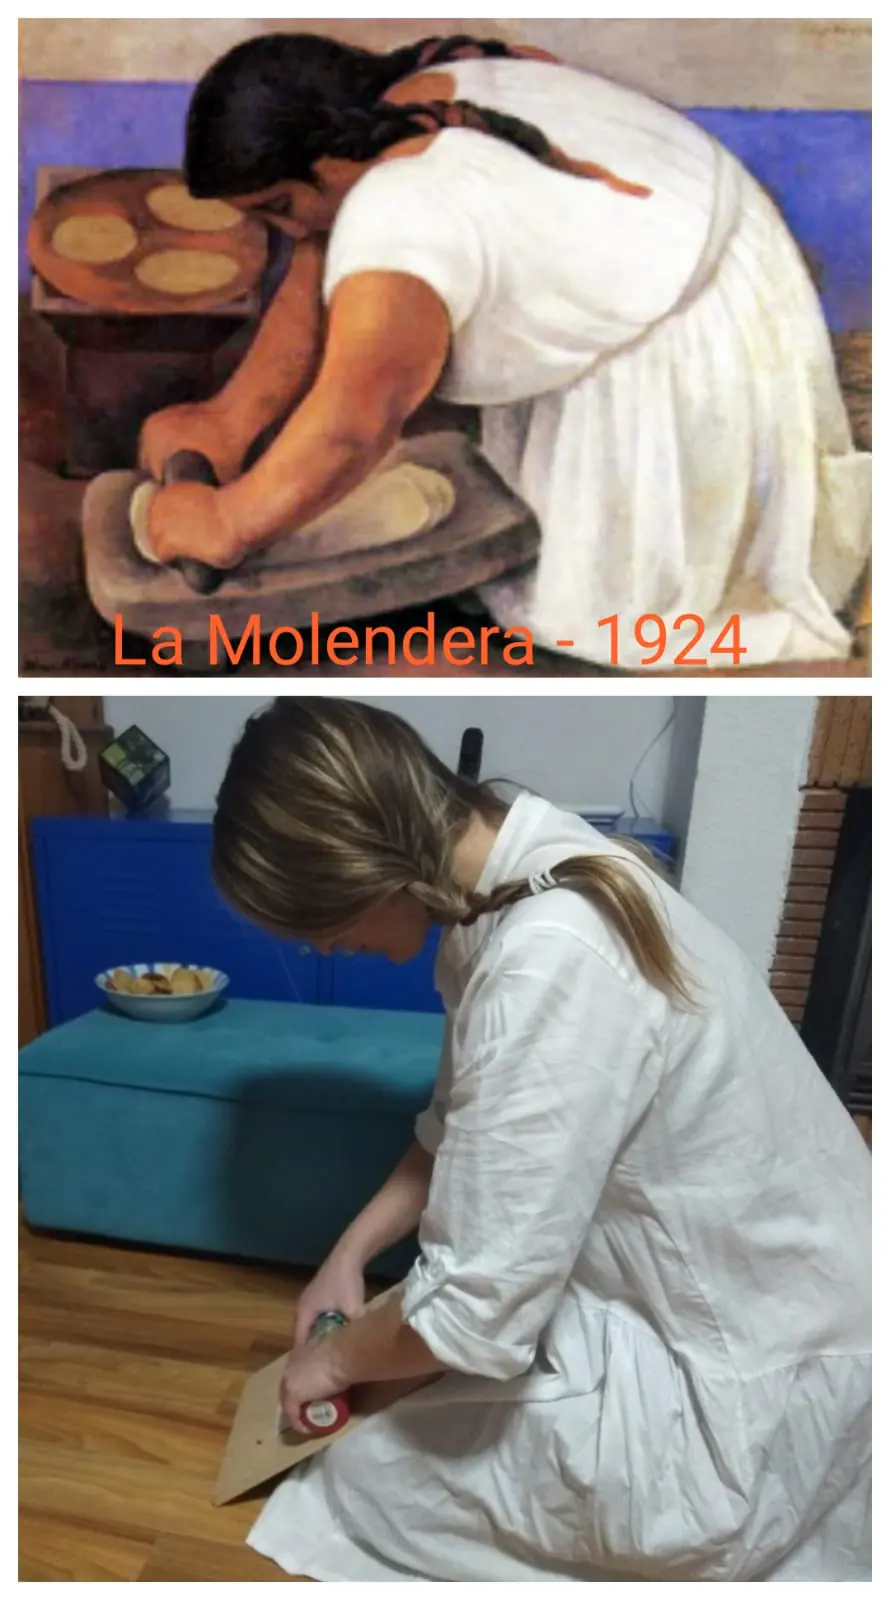 Título del cuadro/fotografía: ‘La molandera’. Autor/a: Diego Rivera. Pintado: 1924. Maestro/a imitador: Seila Martínez, Maestra de Primaria.